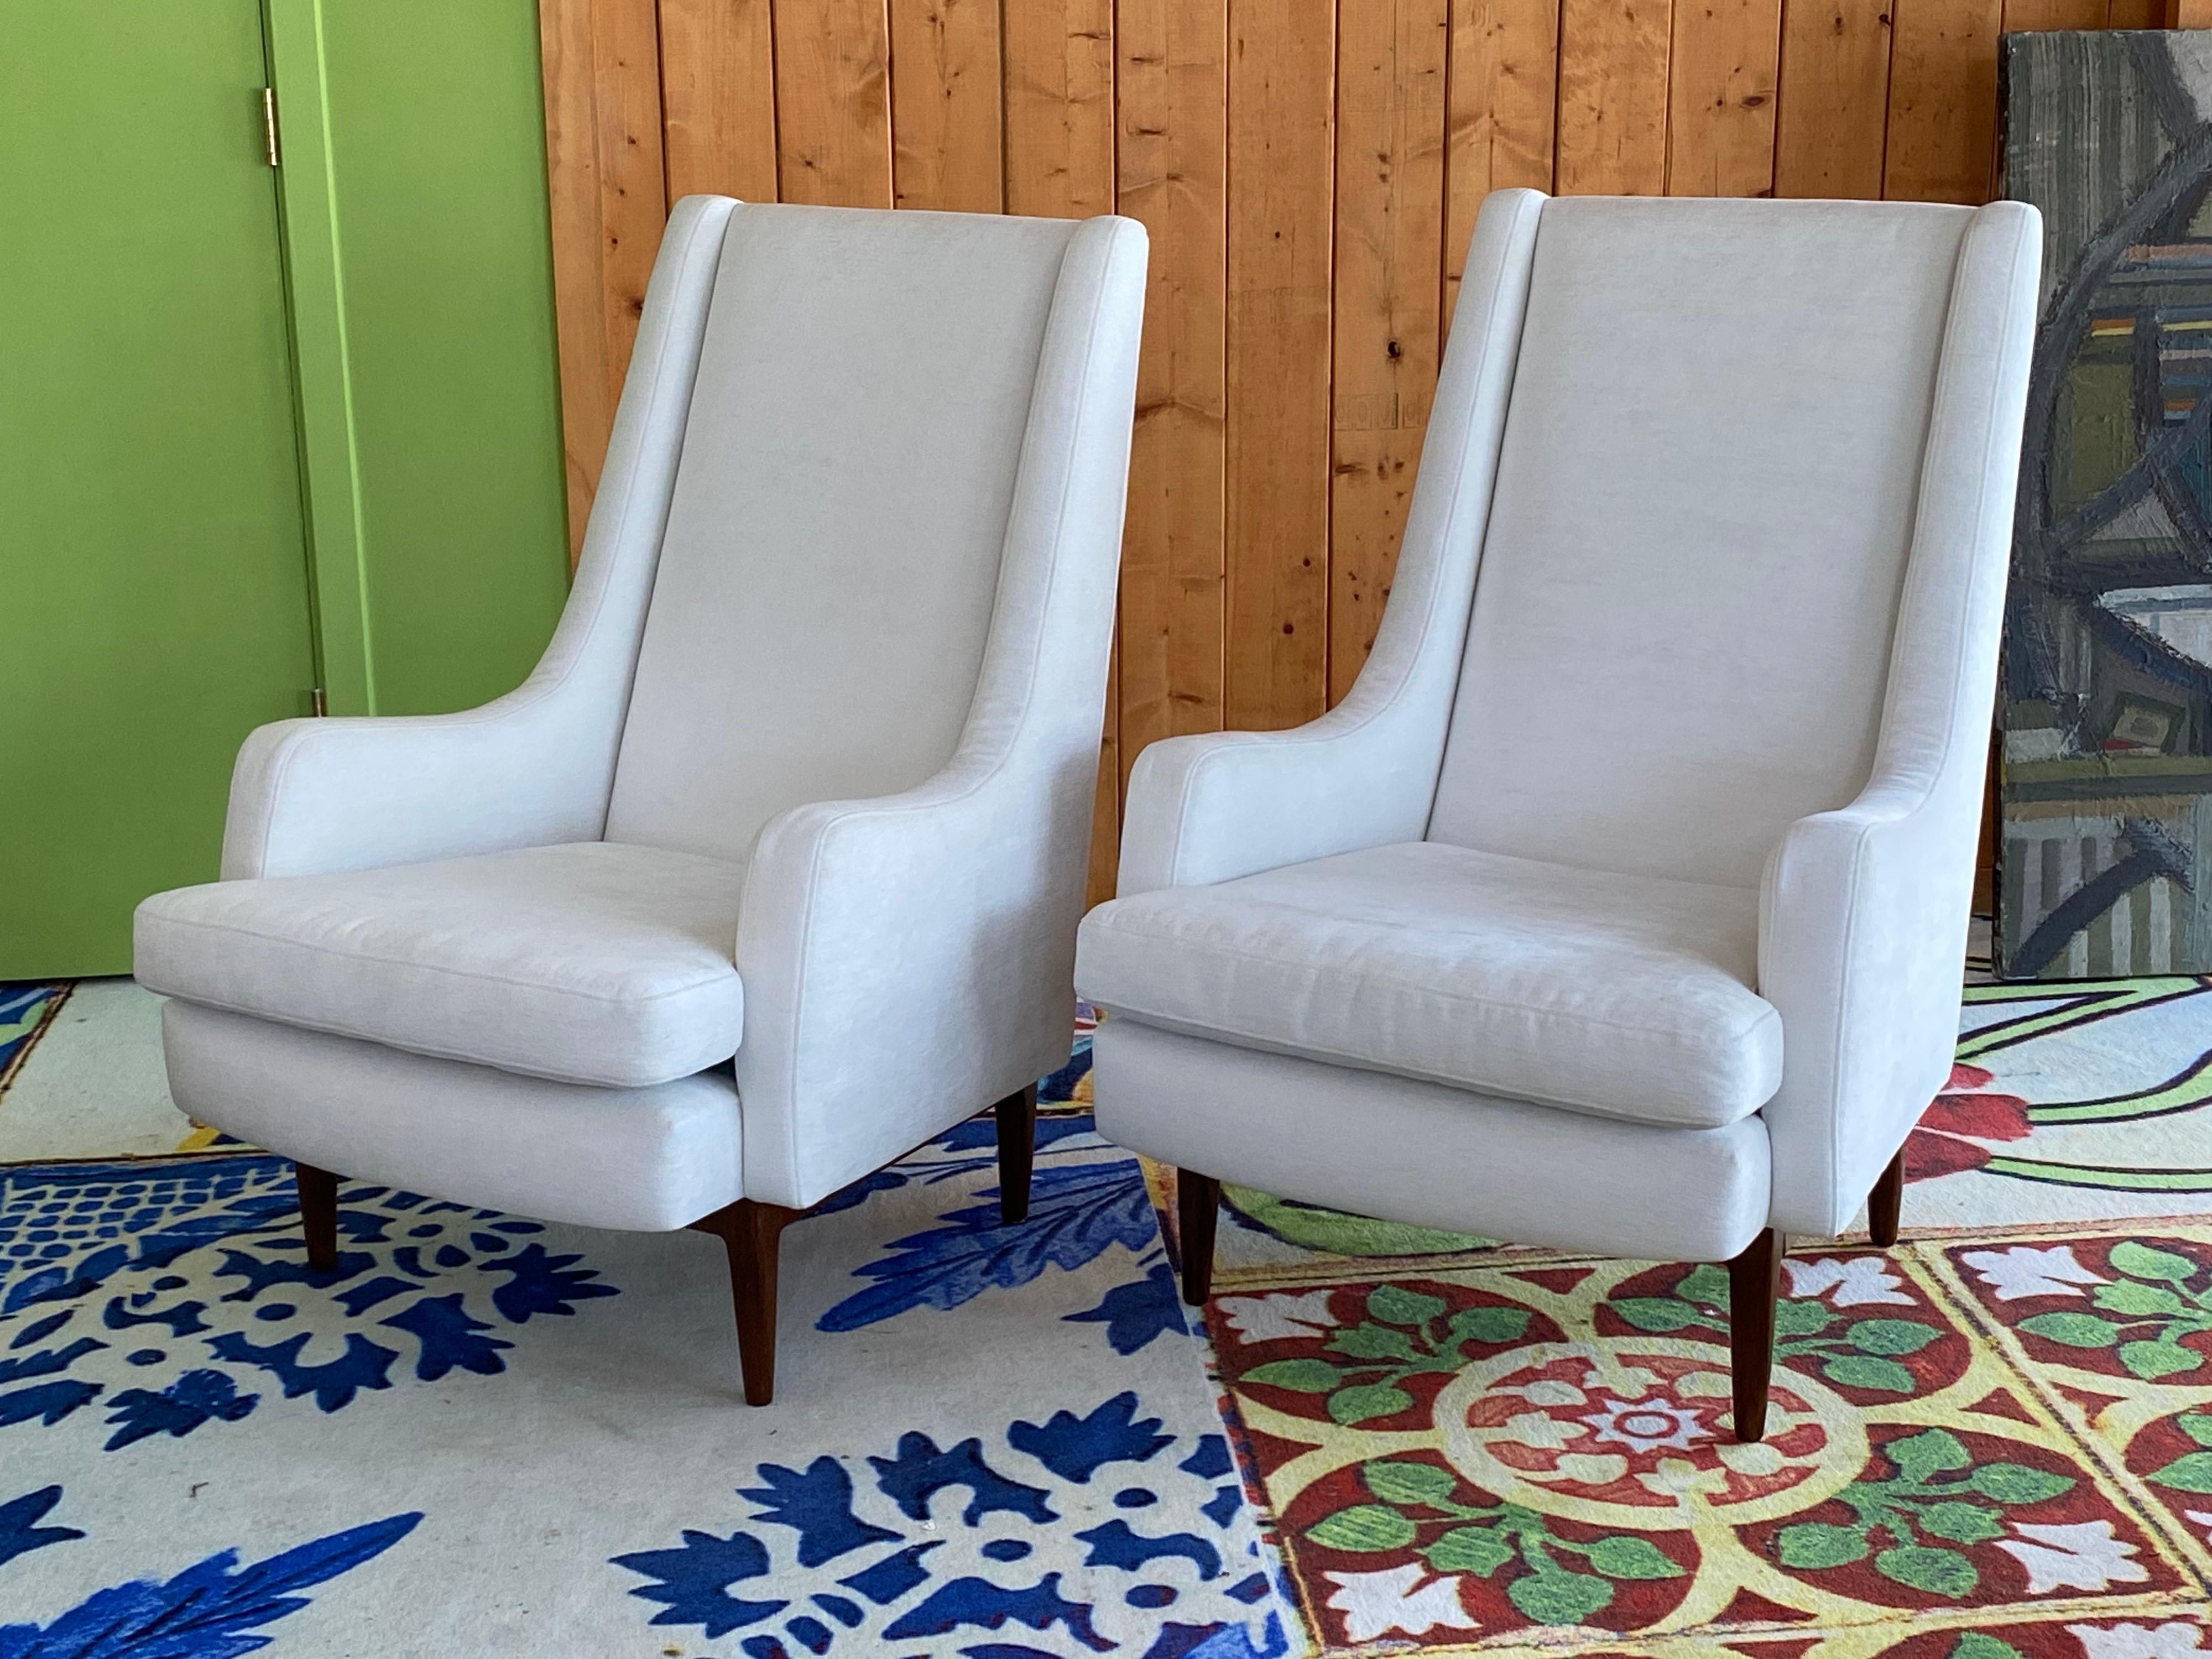 Magnifiques fauteuils club modernes danois,
vers 1960. Nouvelle tapisserie en velours de coton blanc. Pieds en bois poli. En très bon état.